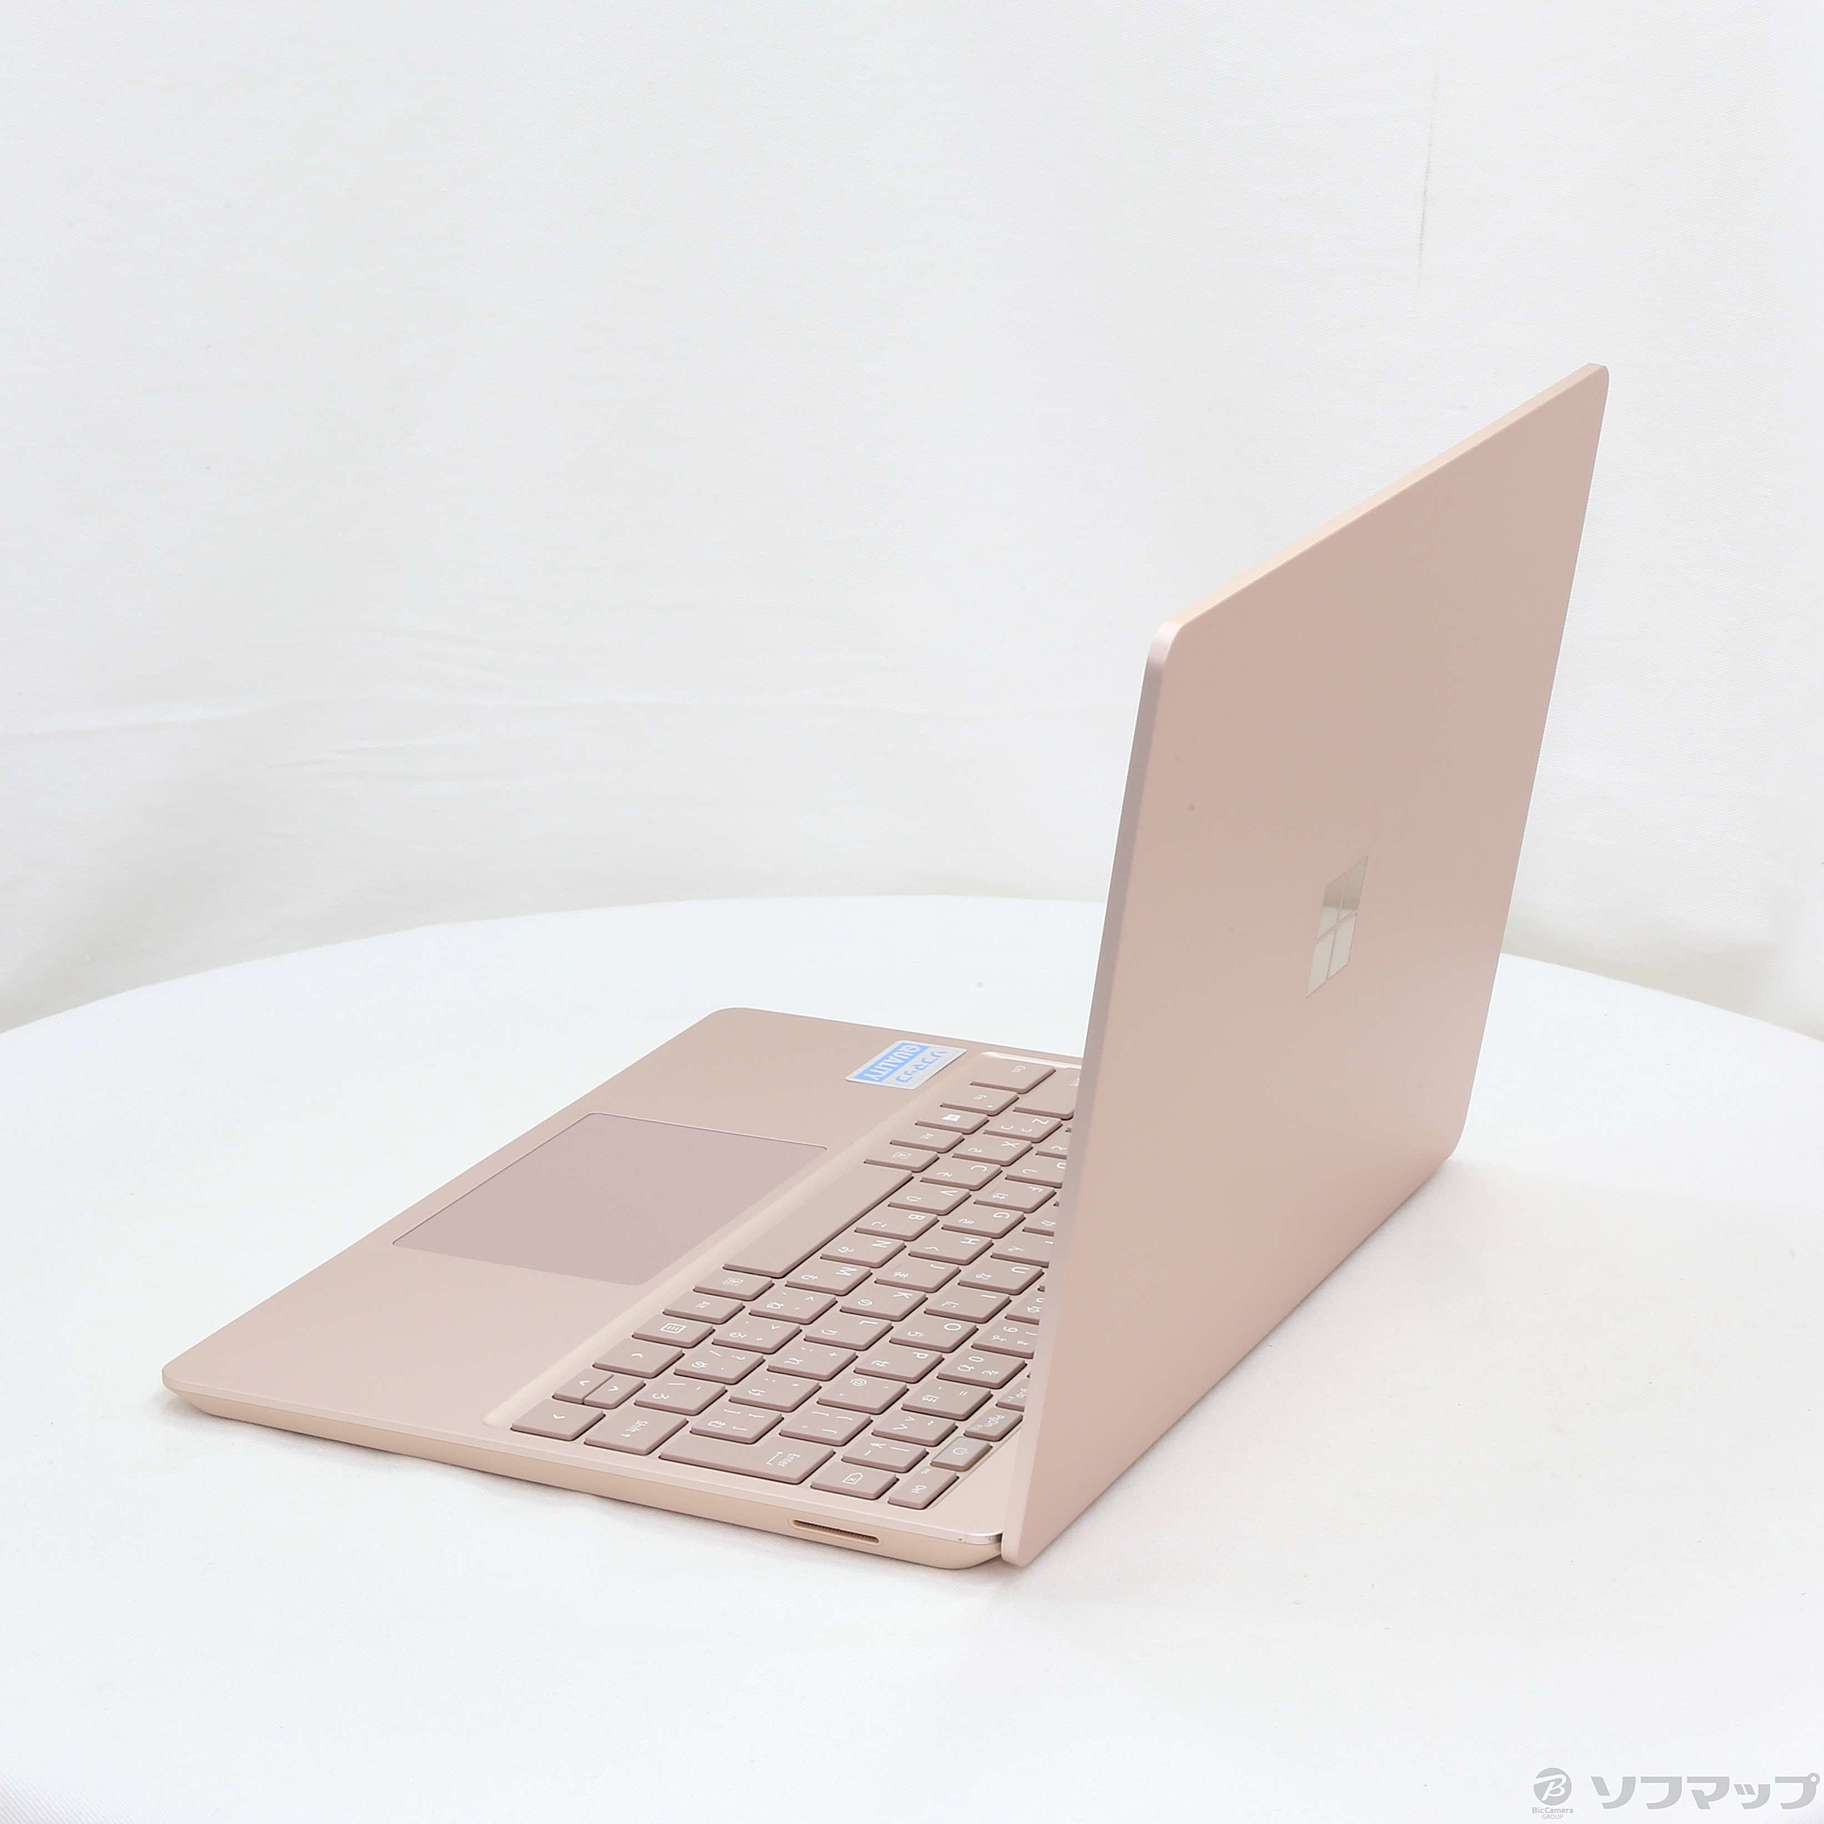 【高評価新作】Surface Laptop Go サンドストーン THH-00045 ノートPC